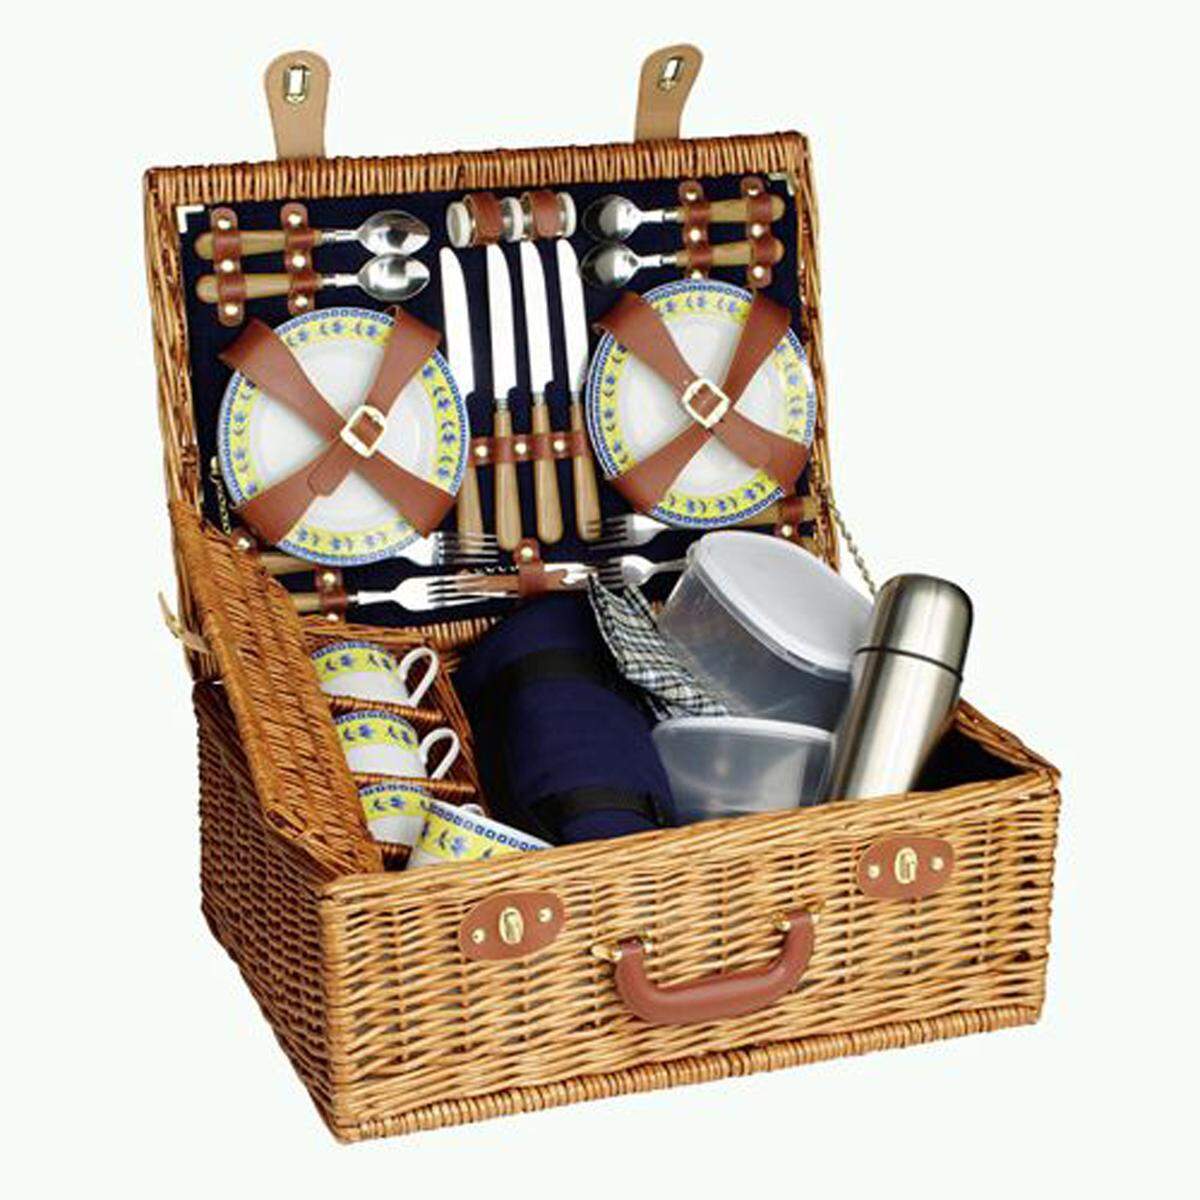 Davon profitiert sicher auch der Schenker: Picknick-Set für 4 Personen, 159 Euro, www.woodsteel.de.